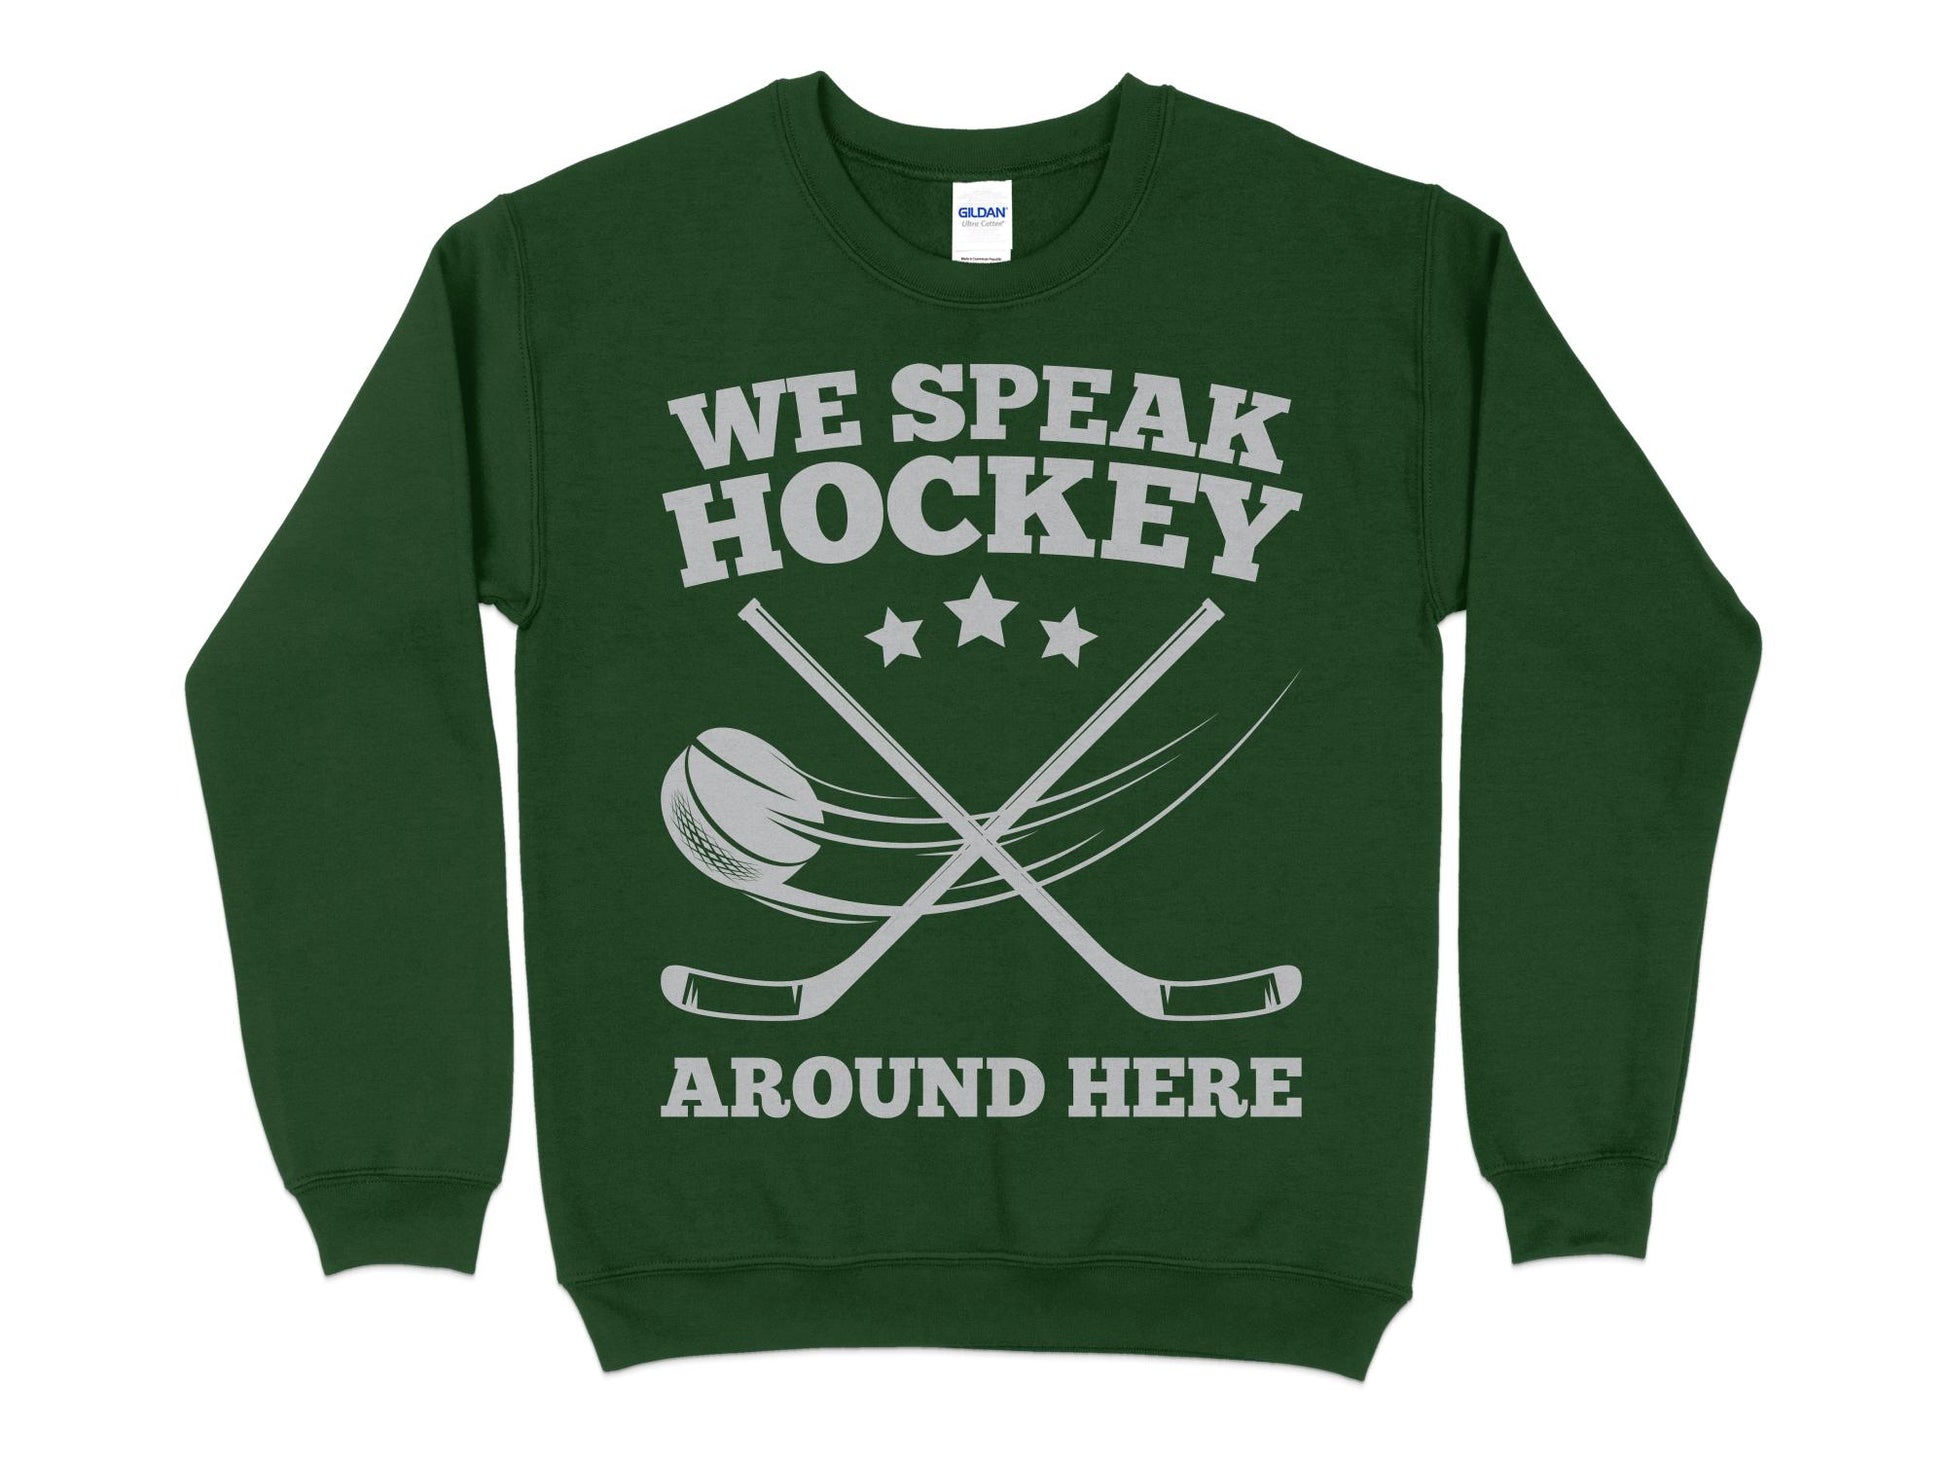 Funny Hockey Sweatshirt - We Speak Hockey Around Here, green